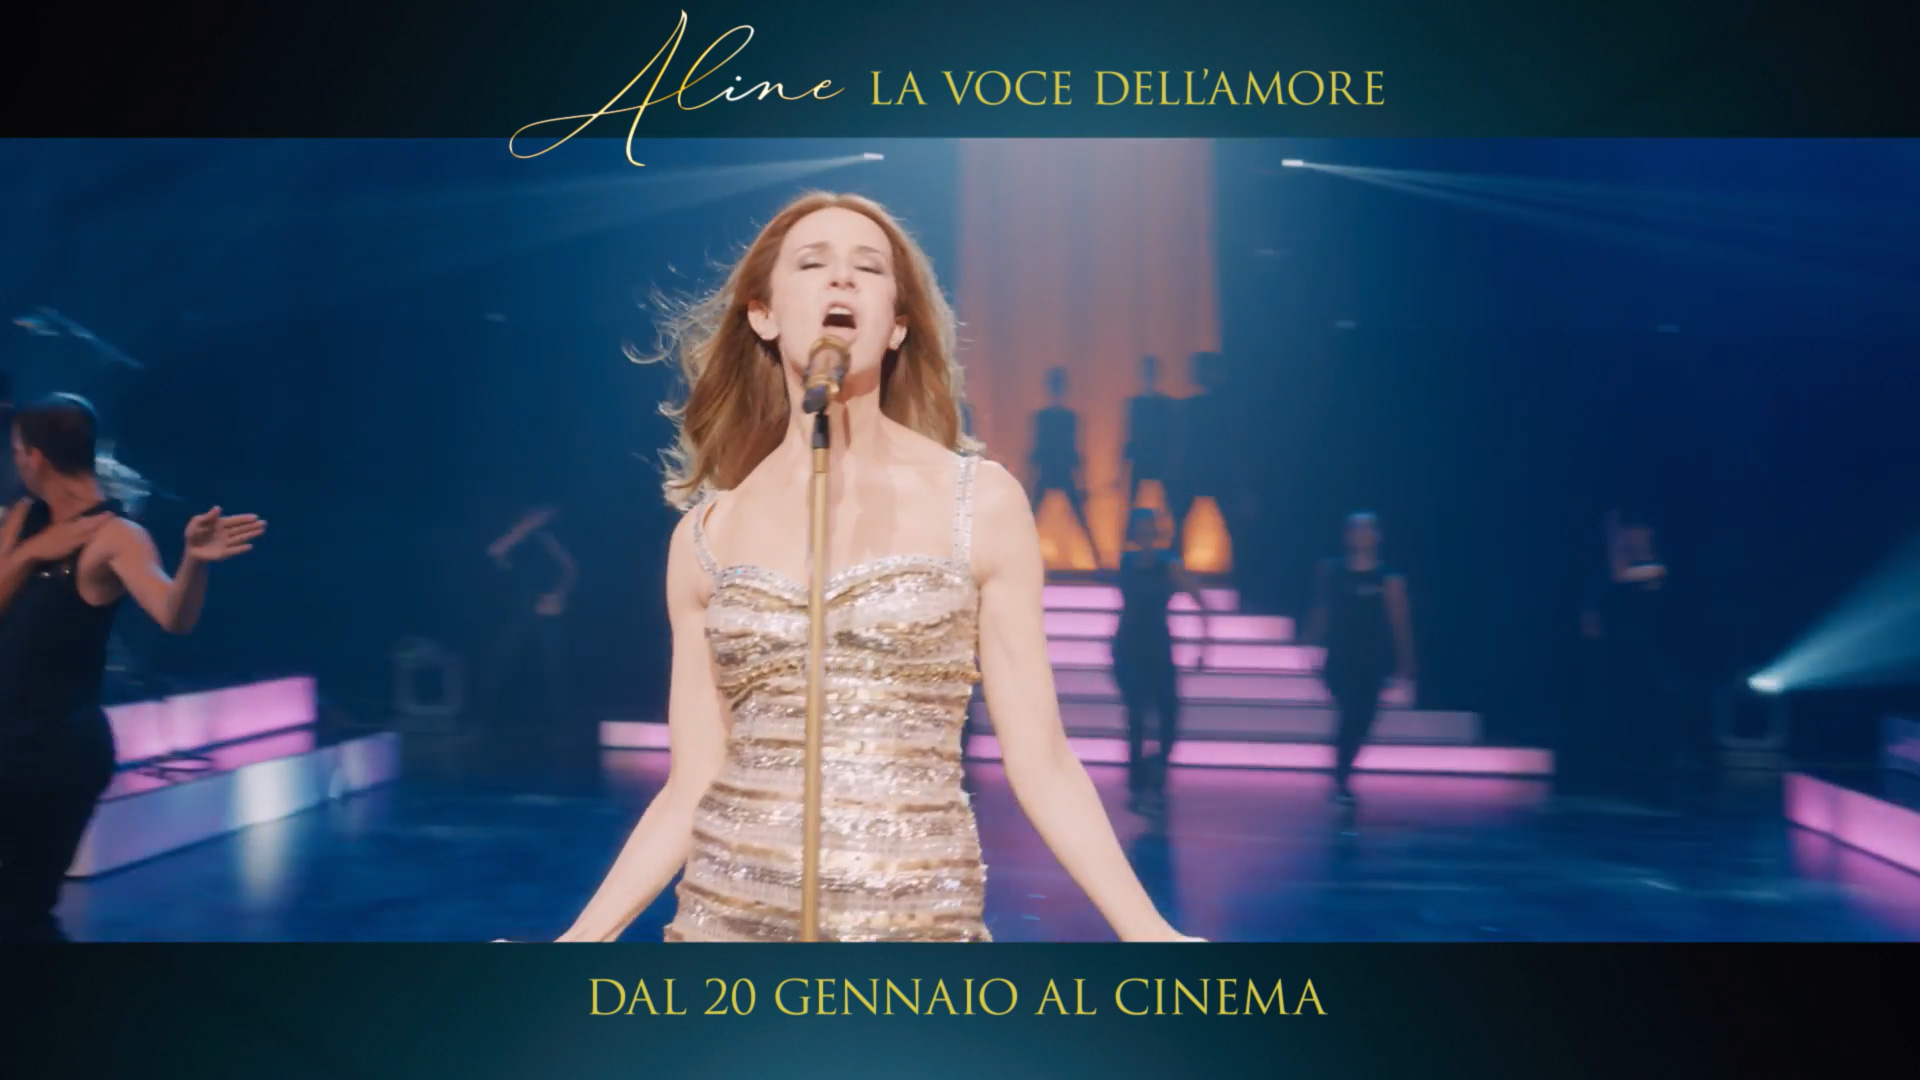 Le canzoni del film su Céline Dion Aline - La voce dell'amore